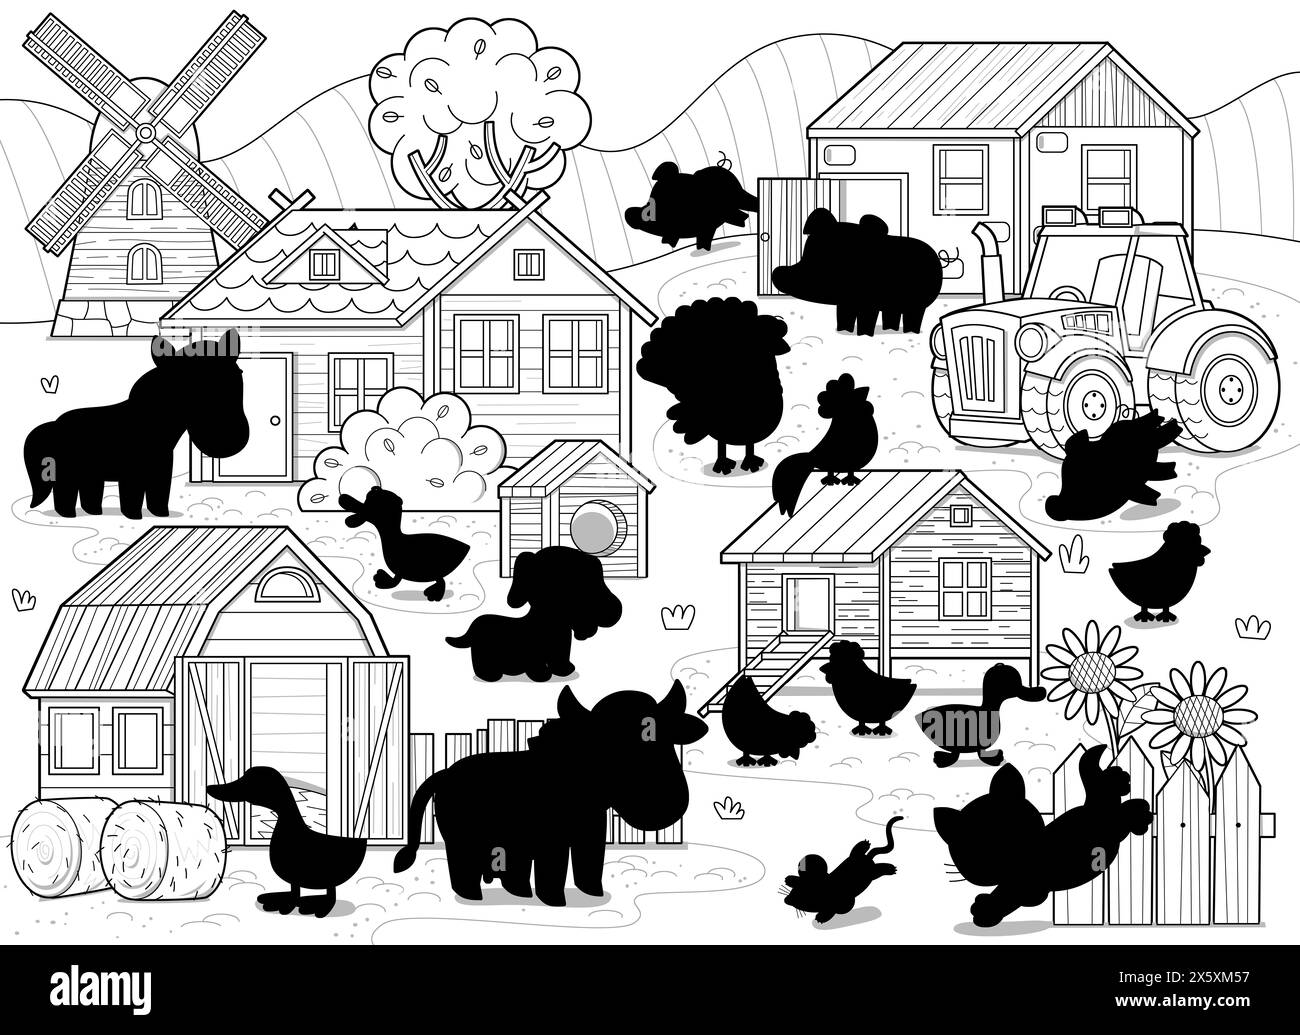 scène de dessin animé avec ferme ranch bâtiments de village moulin à vent grange poulailler animaux vache cheval poulets chien chat et dessin de tracteur illustration Banque D'Images